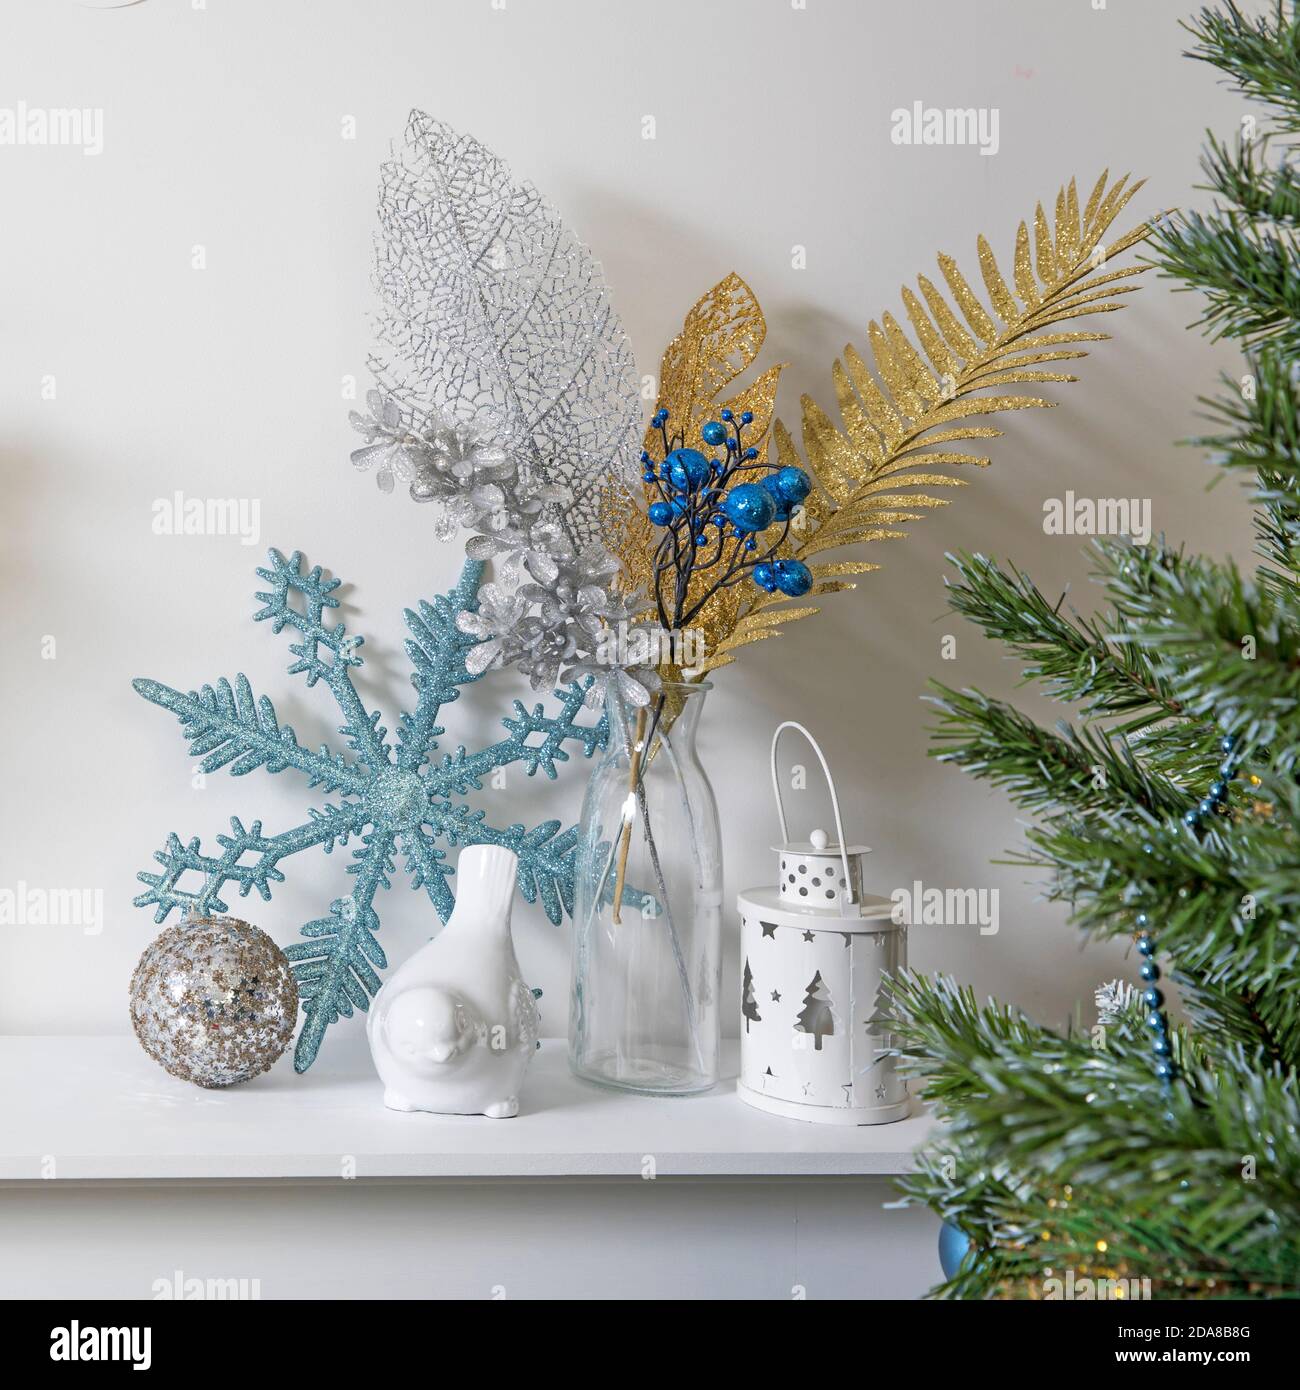 Décoration de Noël : flocon de neige bleu à paillettes artificielles, porte-bougie et porte-bougie en porcelaine blanc, figurine, bullfinch oiseau sur la console. Copier l'espace Banque D'Images